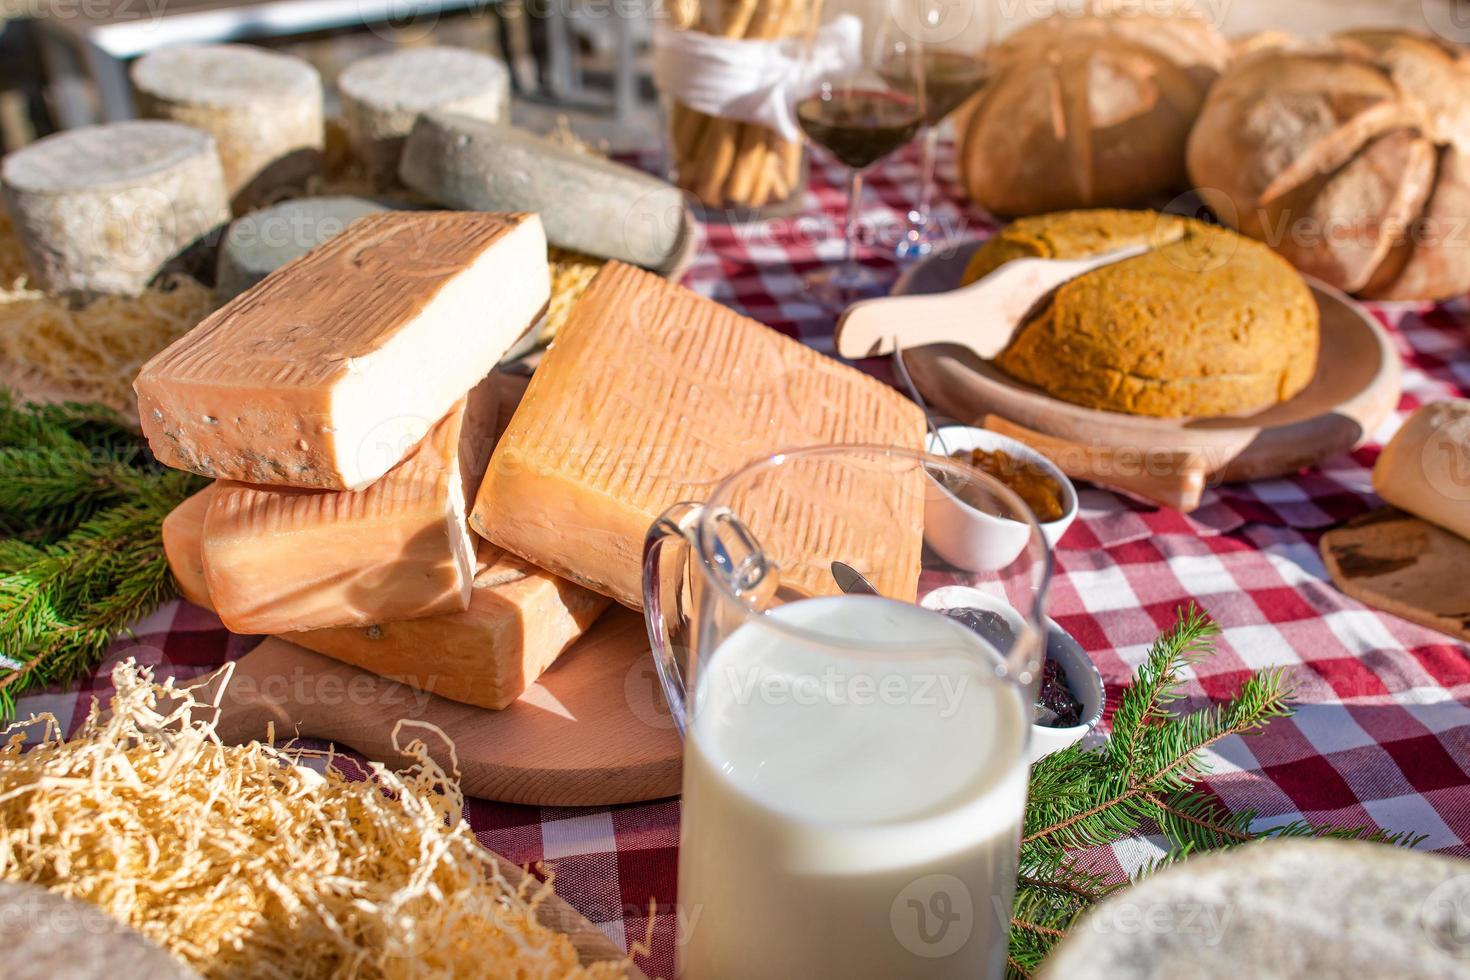 mjölk och ost med mat på en tabell utanför en bondgård i de italiensk alps foto